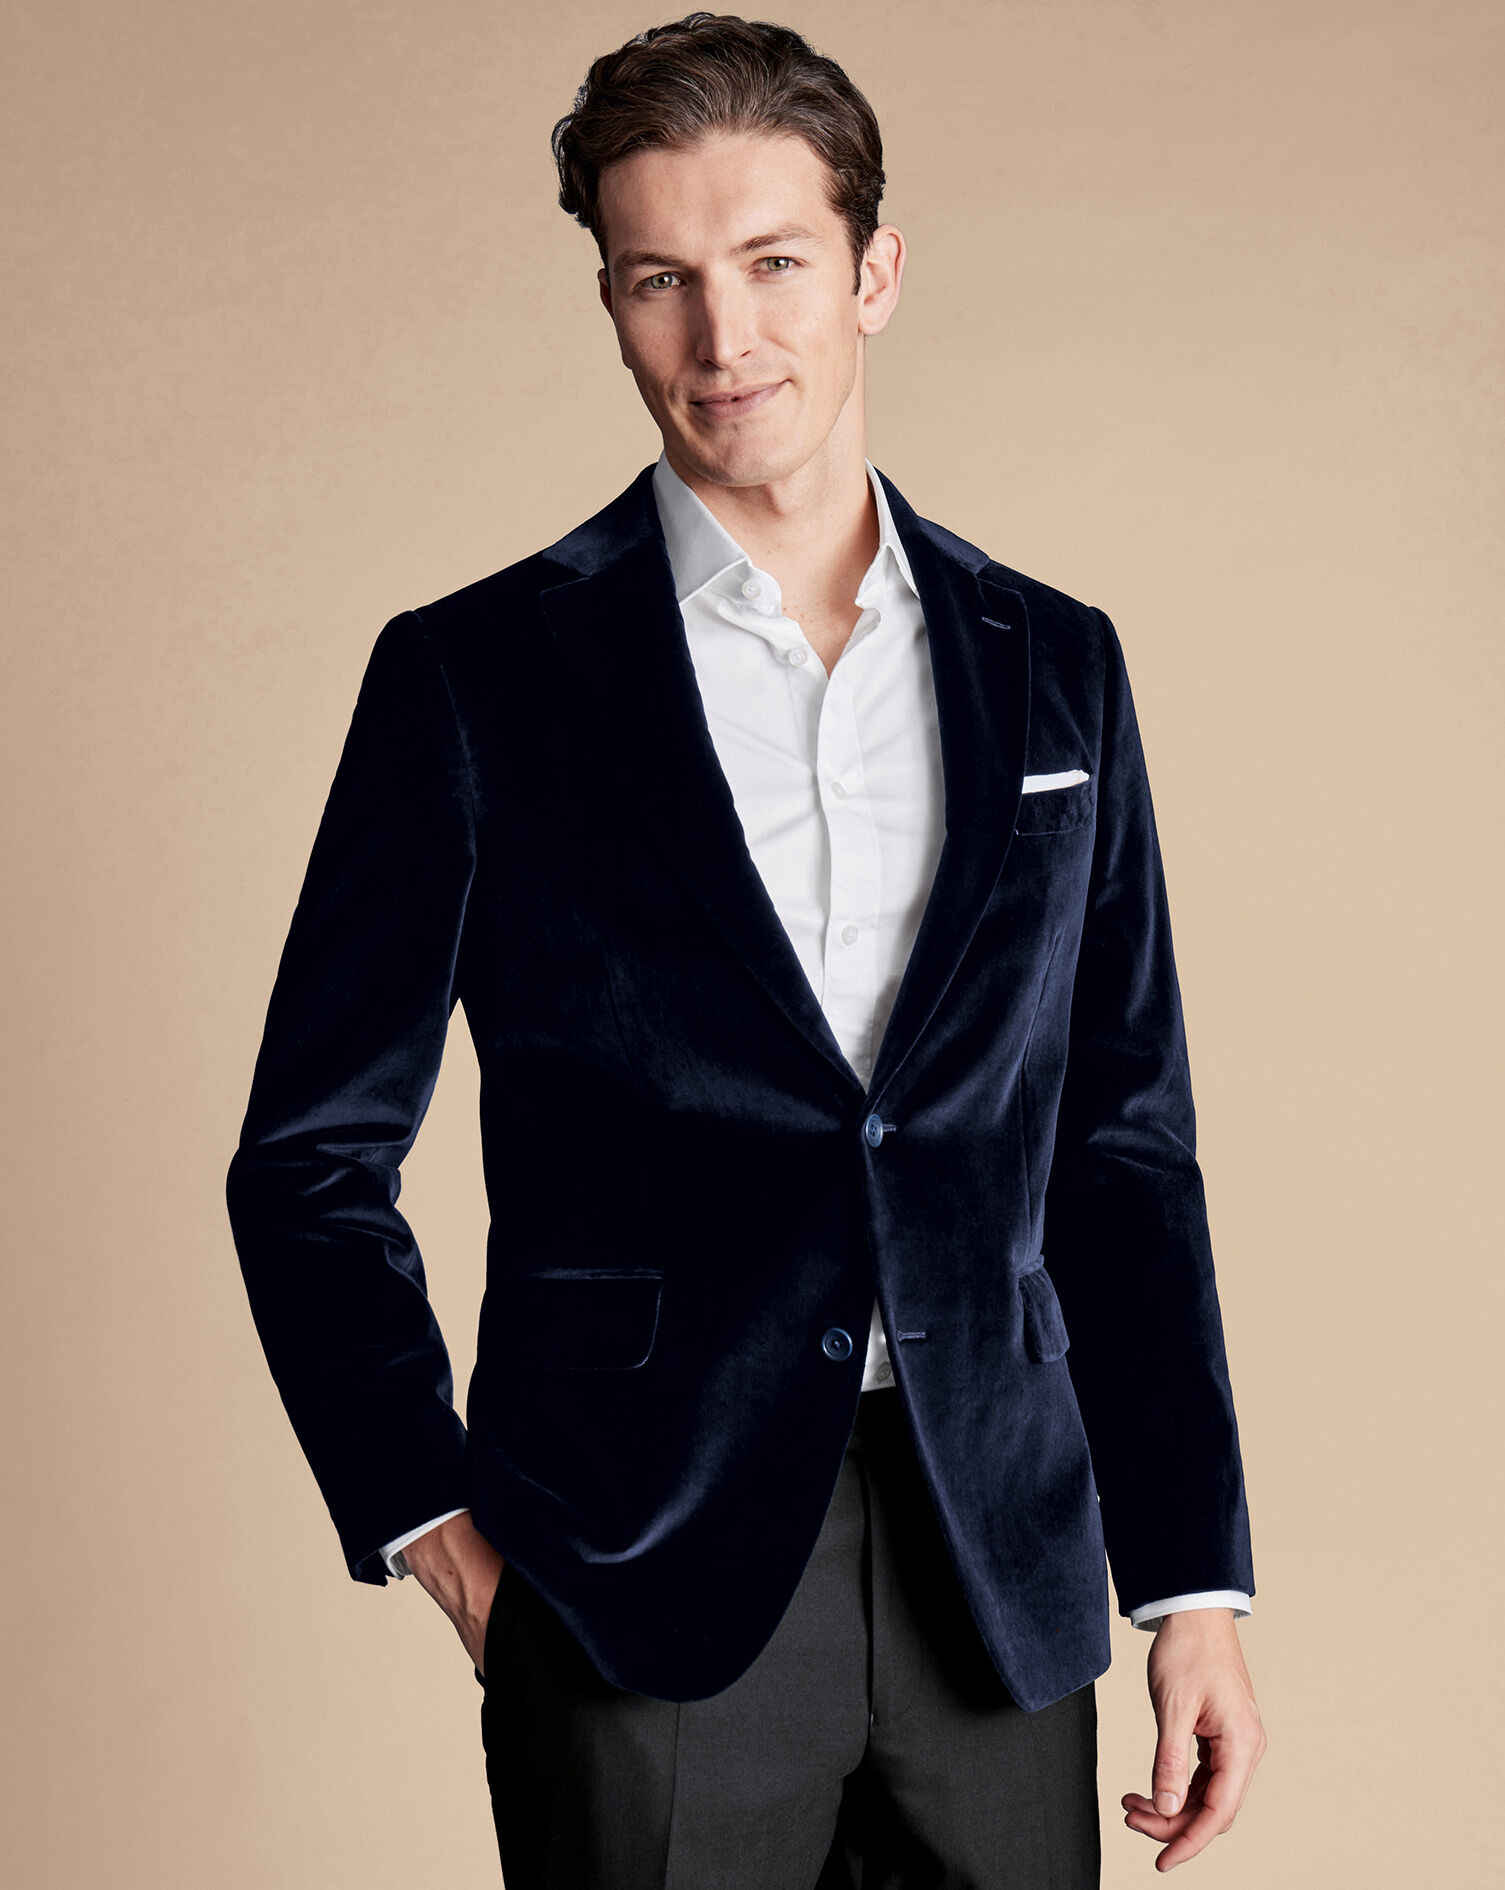 Men Golden Velvet Jacket Wedding Groom Slim Fit Dinner Coat - Etsy | Mens  outfits, Men stylish dress, Blazer outfits men